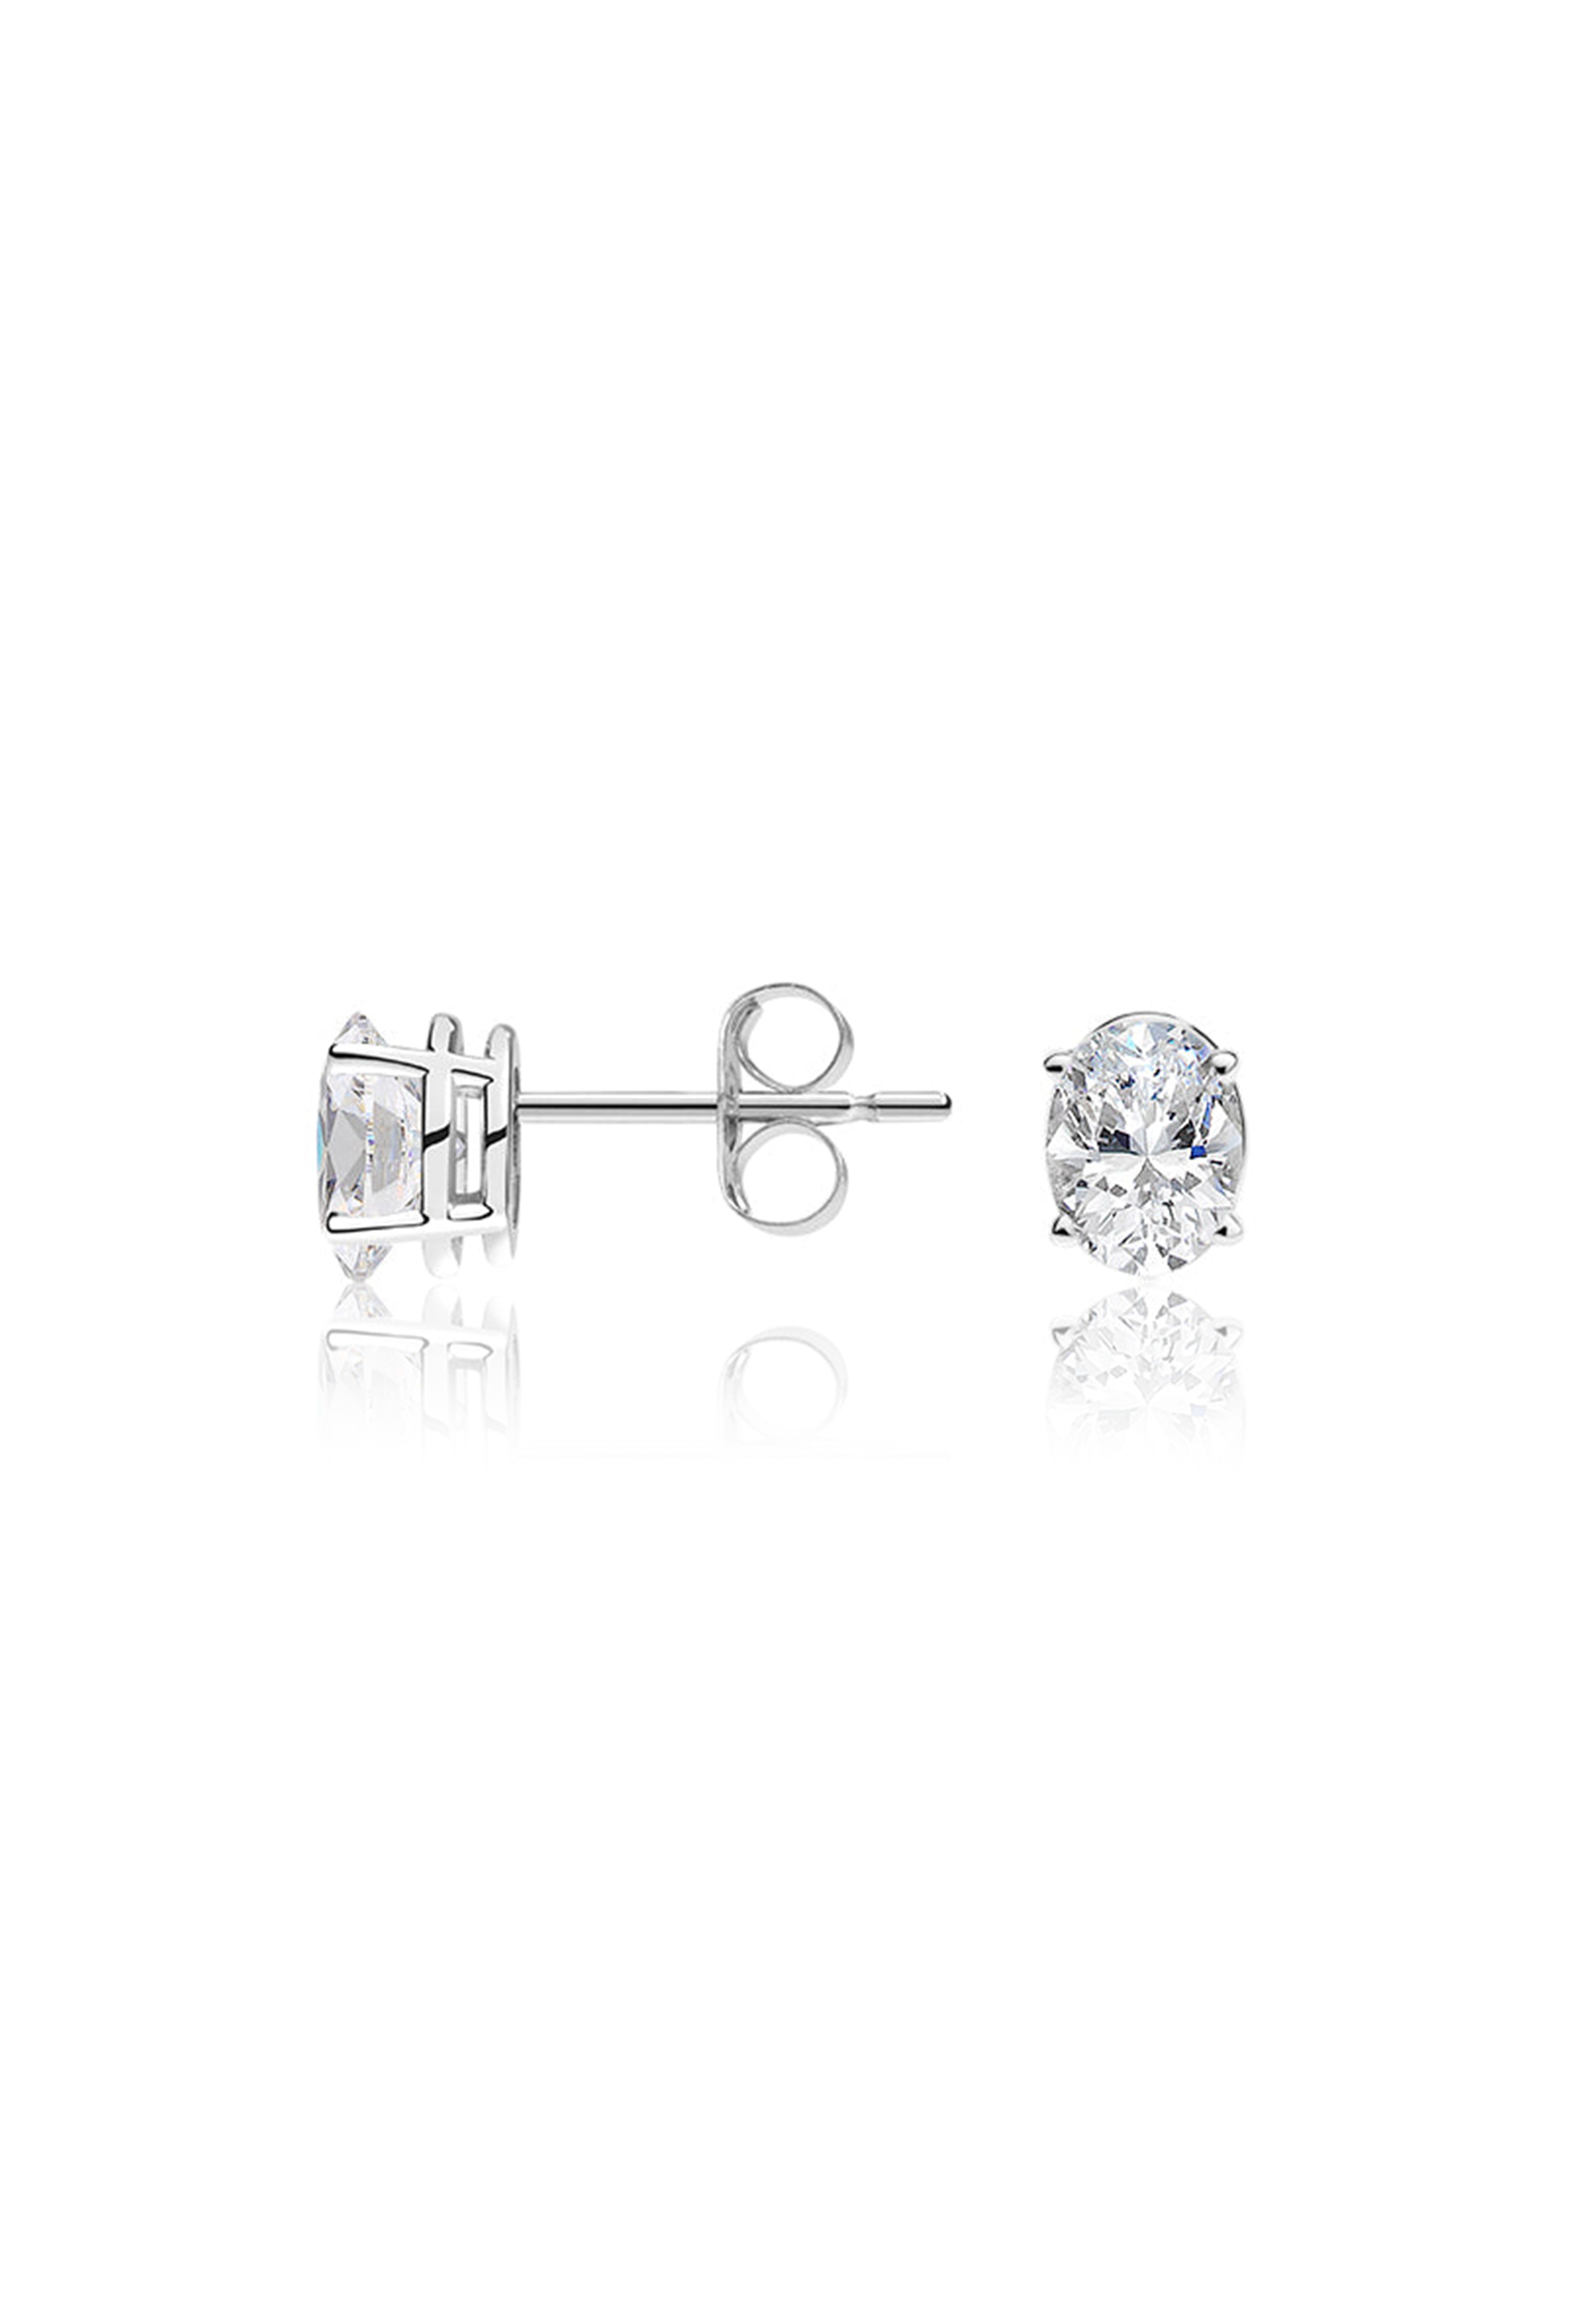 Oval Diamond Earrings 1.0 Carat - Fenom & Co.